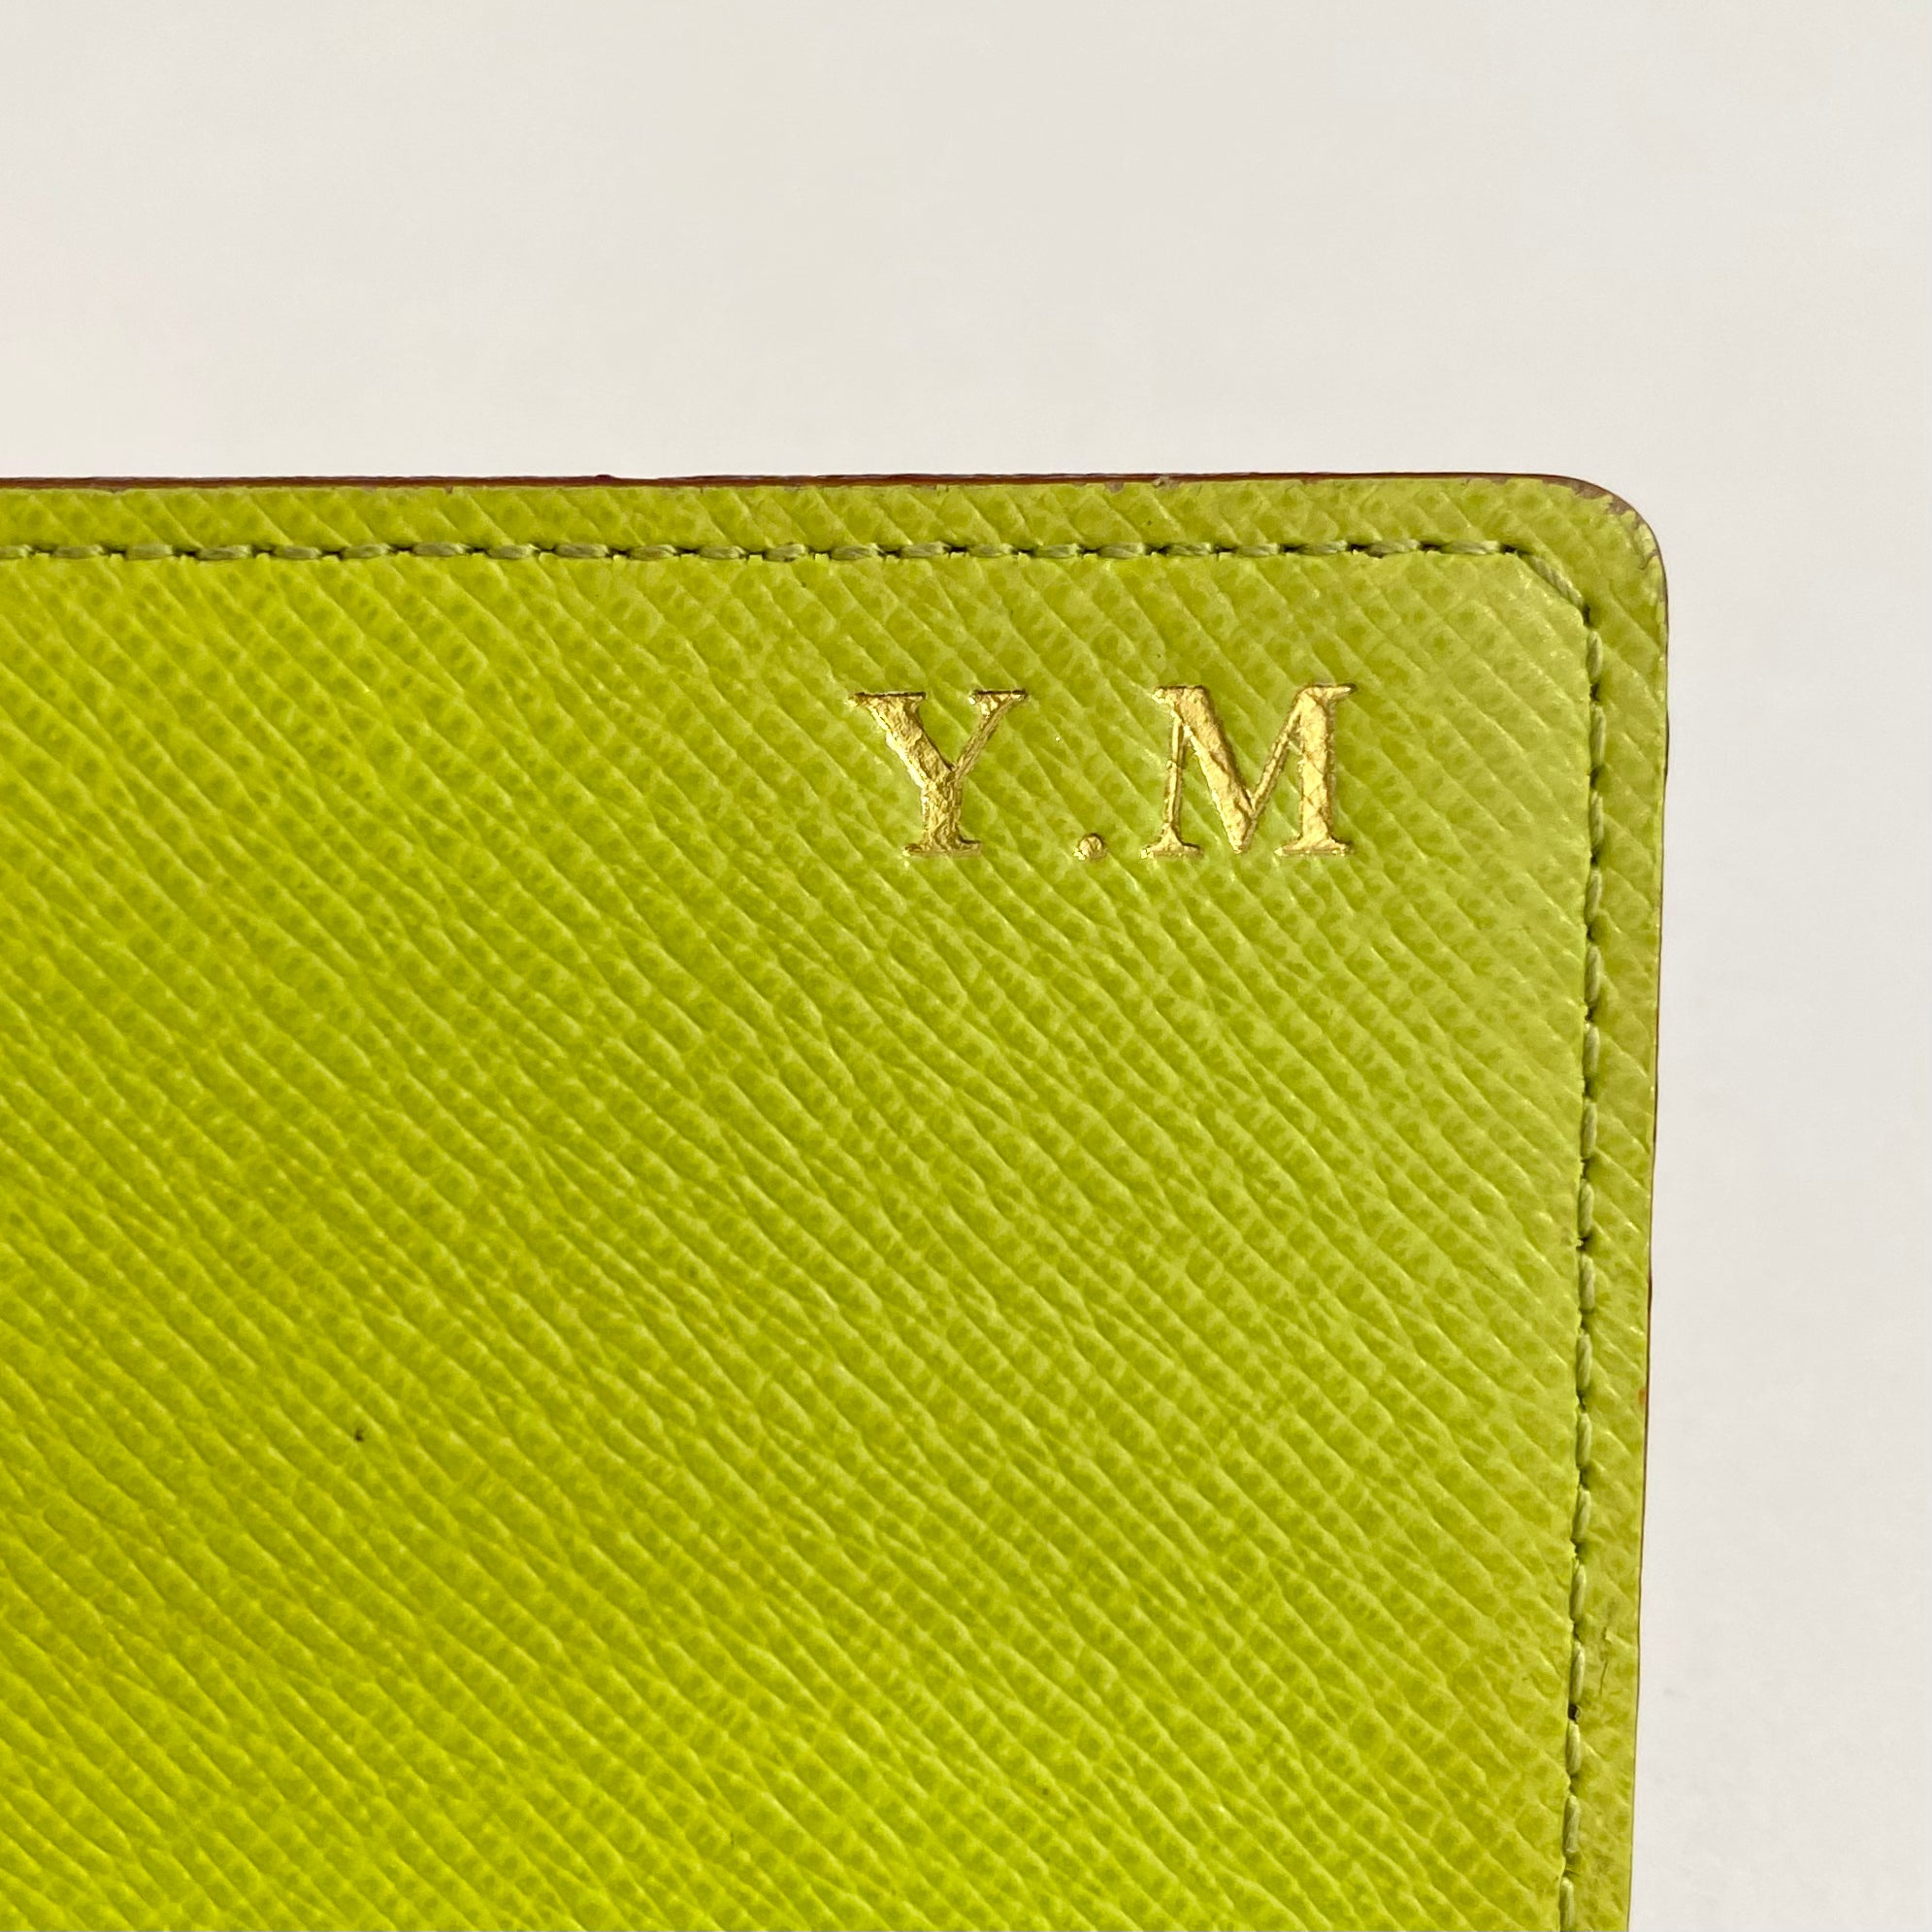 Louis Vuitton Mutlicolore Sarah Wallet - The Trove